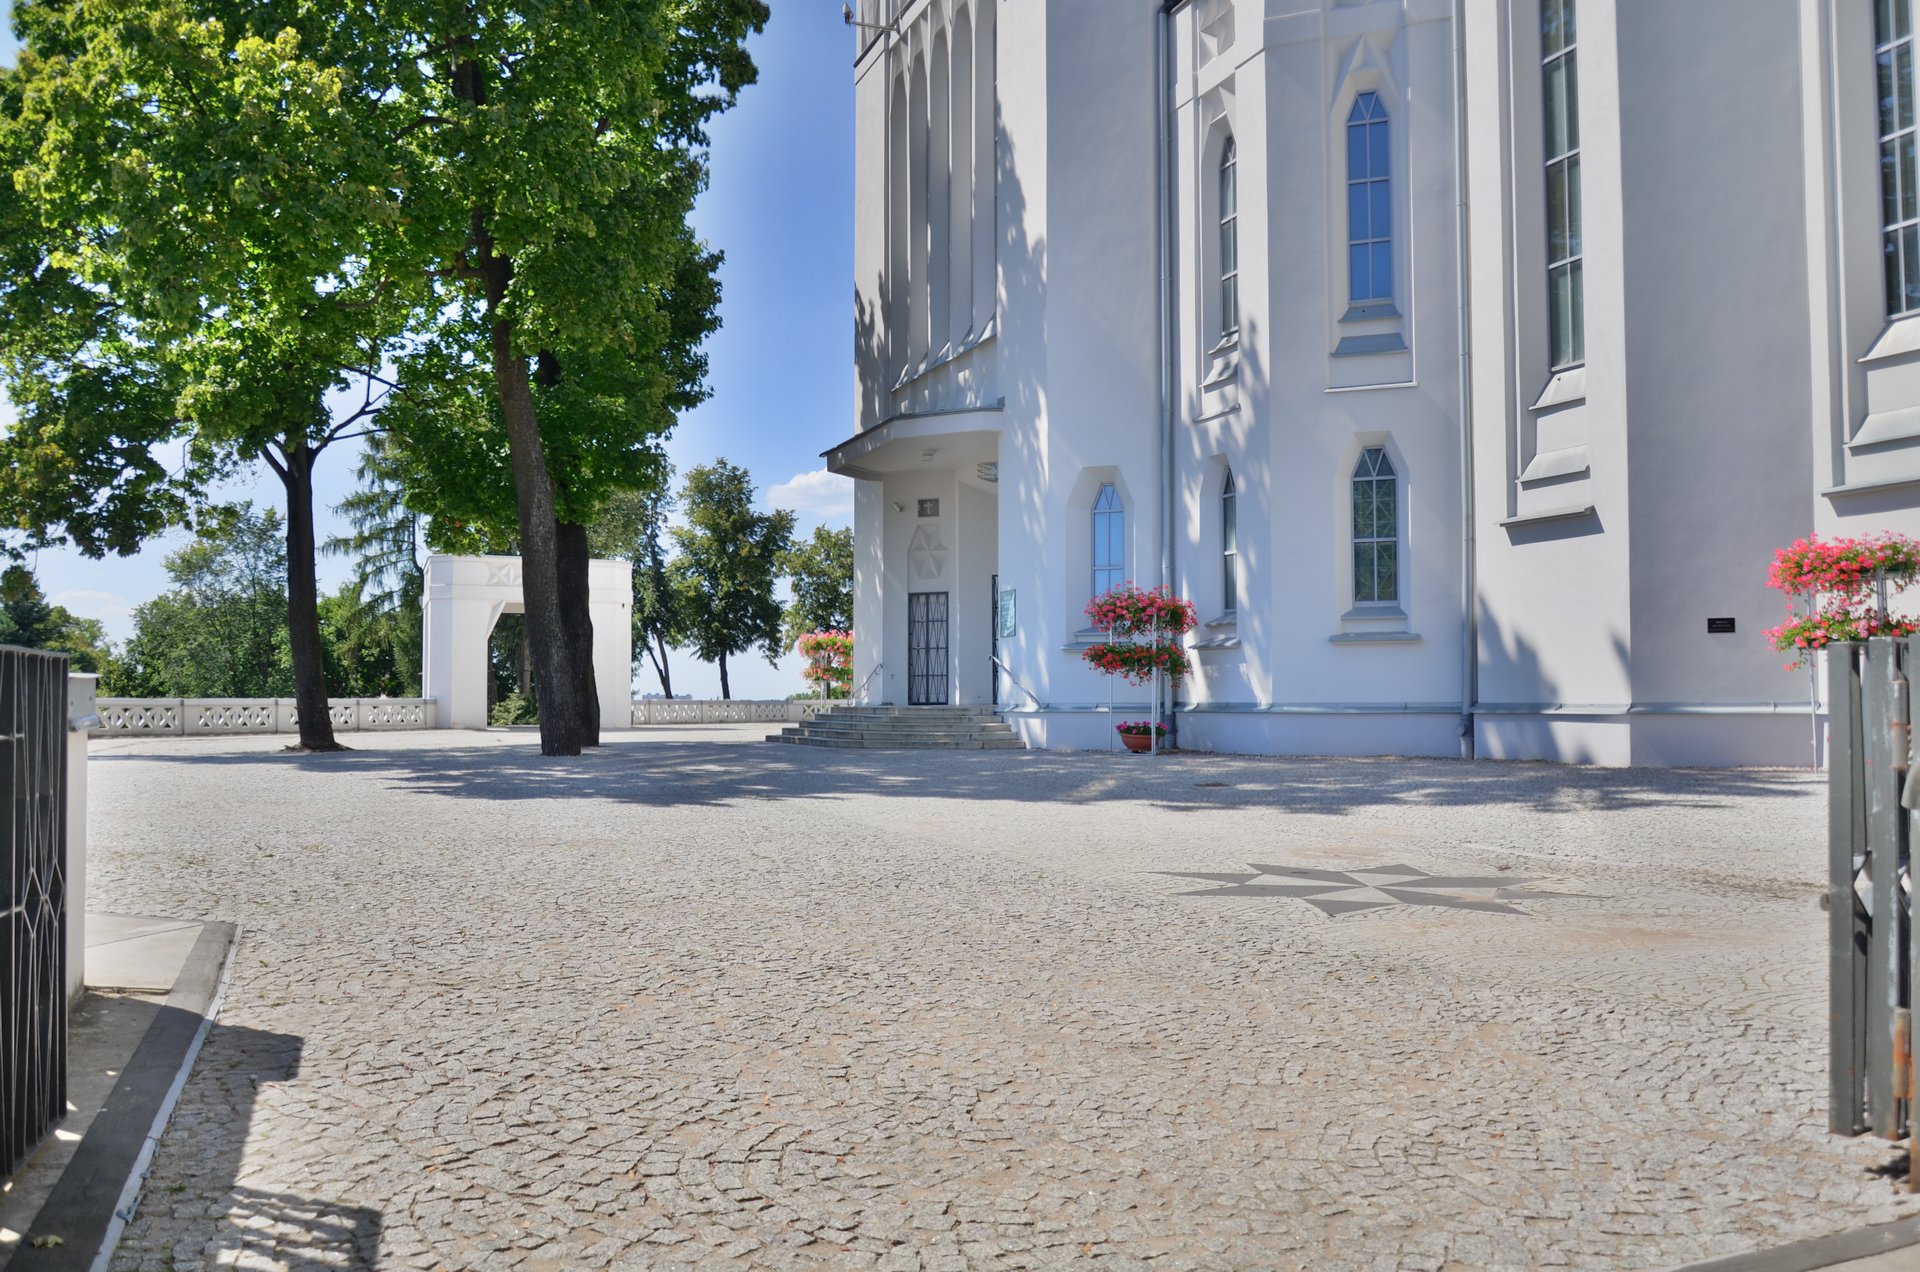 Białystok Kościół św. Rocha religia katolicyzmfree photo darmowe zdjęcie